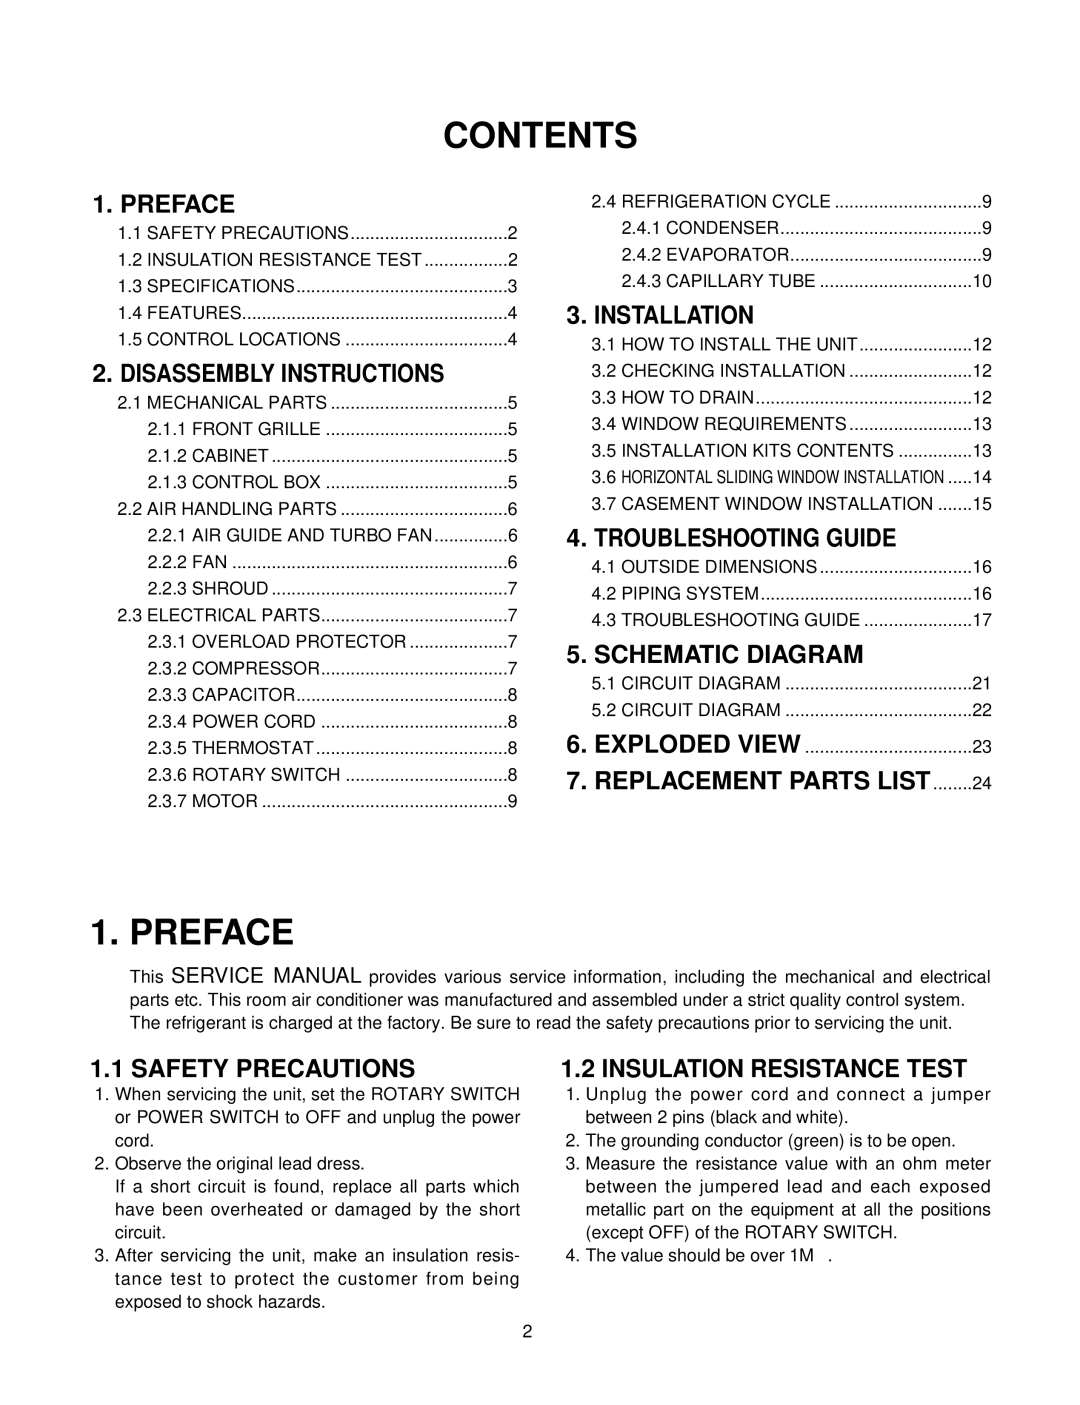 Friedrich SV08A10, SV12A10, SV10A10 manual Contents, Preface 